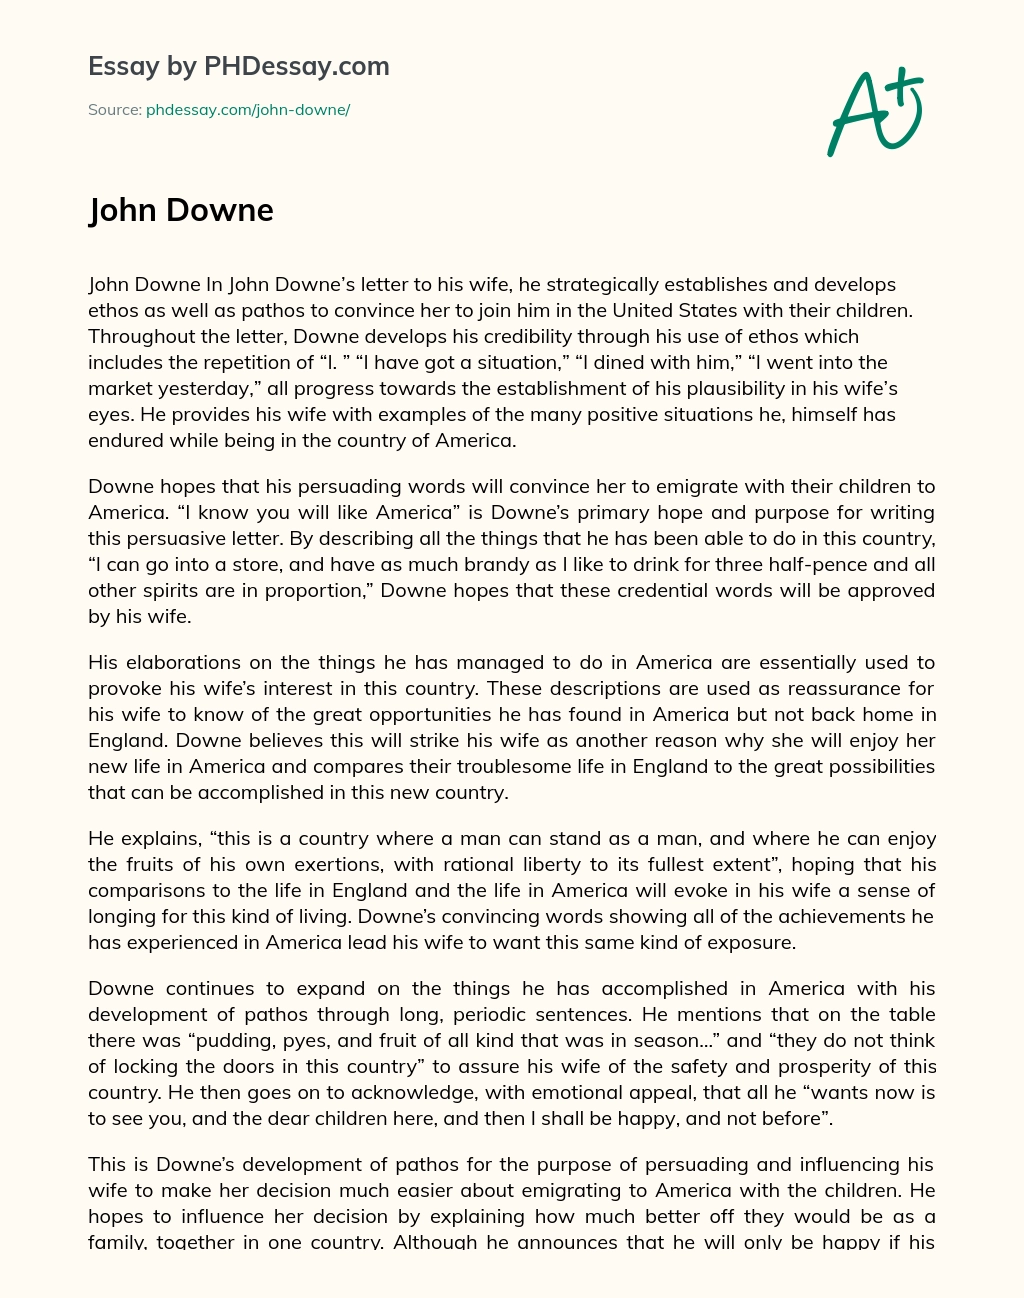 John Downe essay